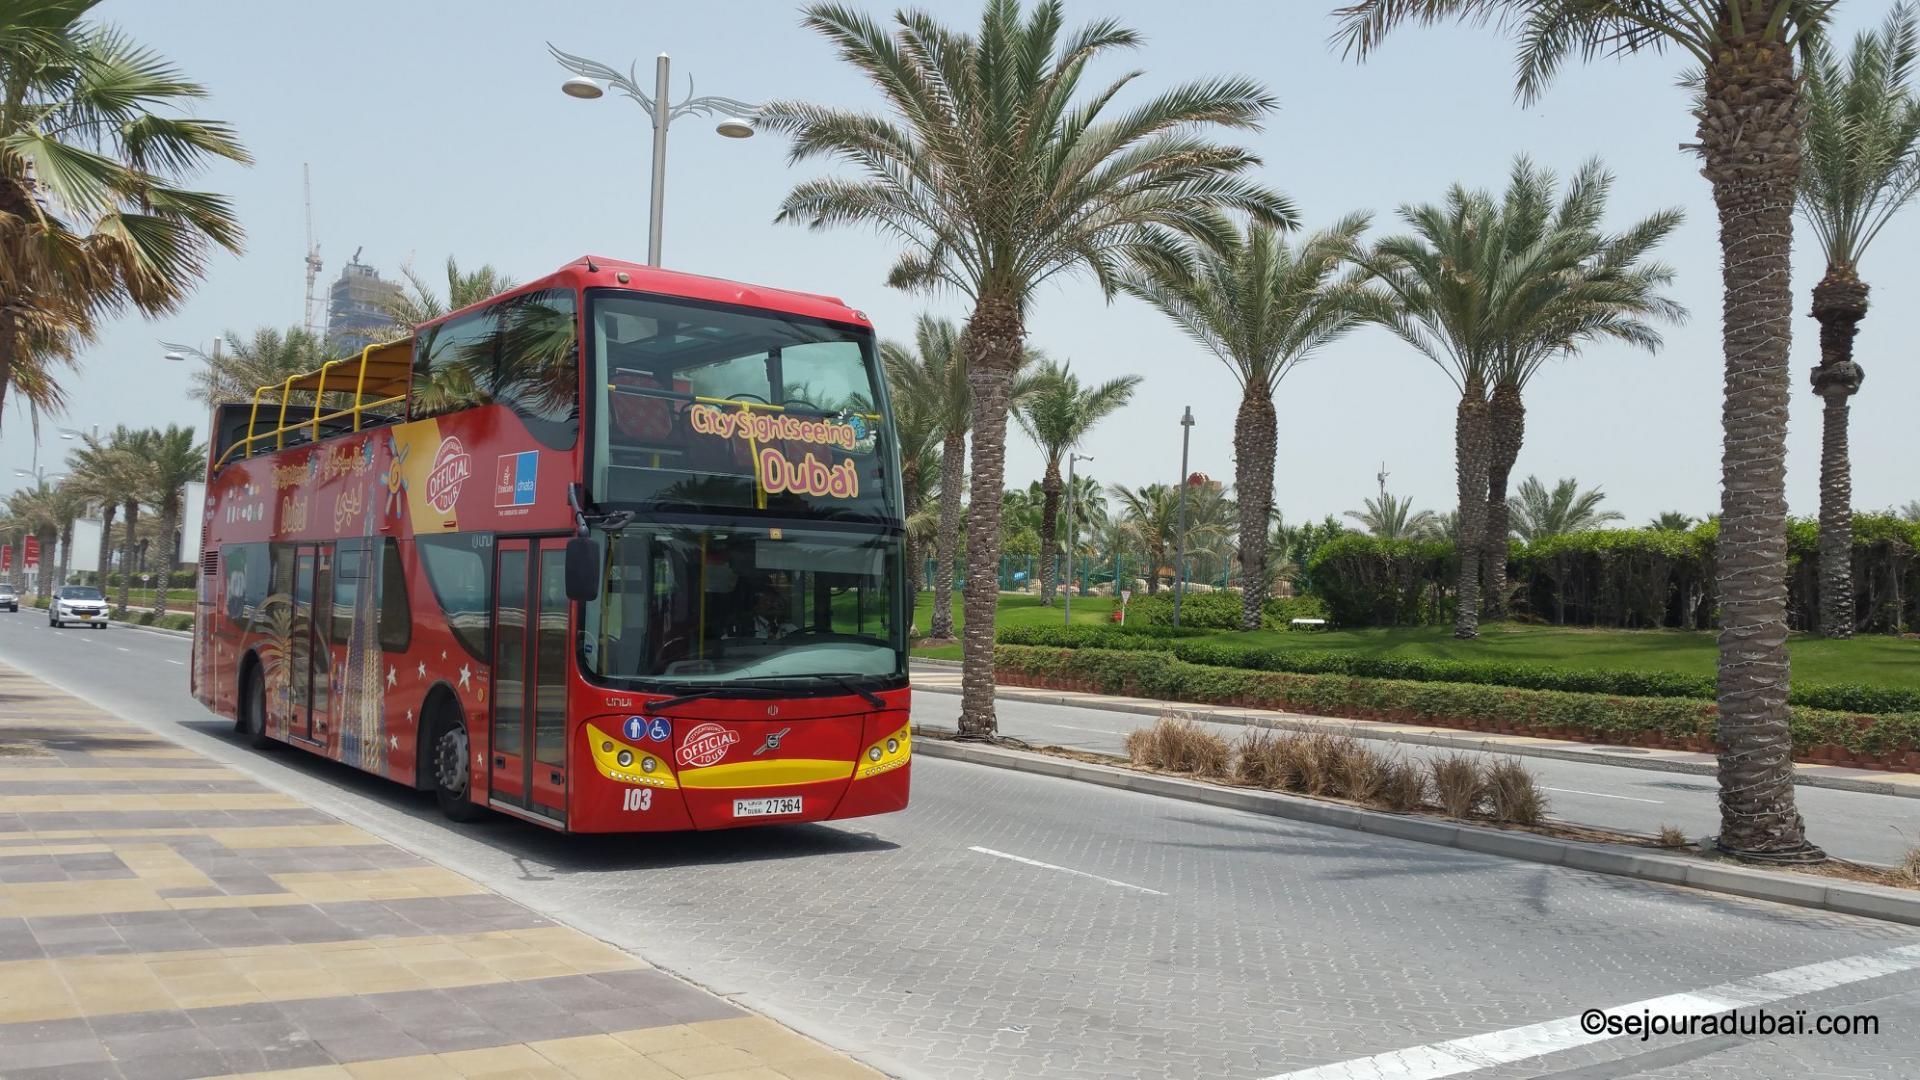 Dubaï City Sightseeing Tour : Visite touristique en Bus à arrêts multiples